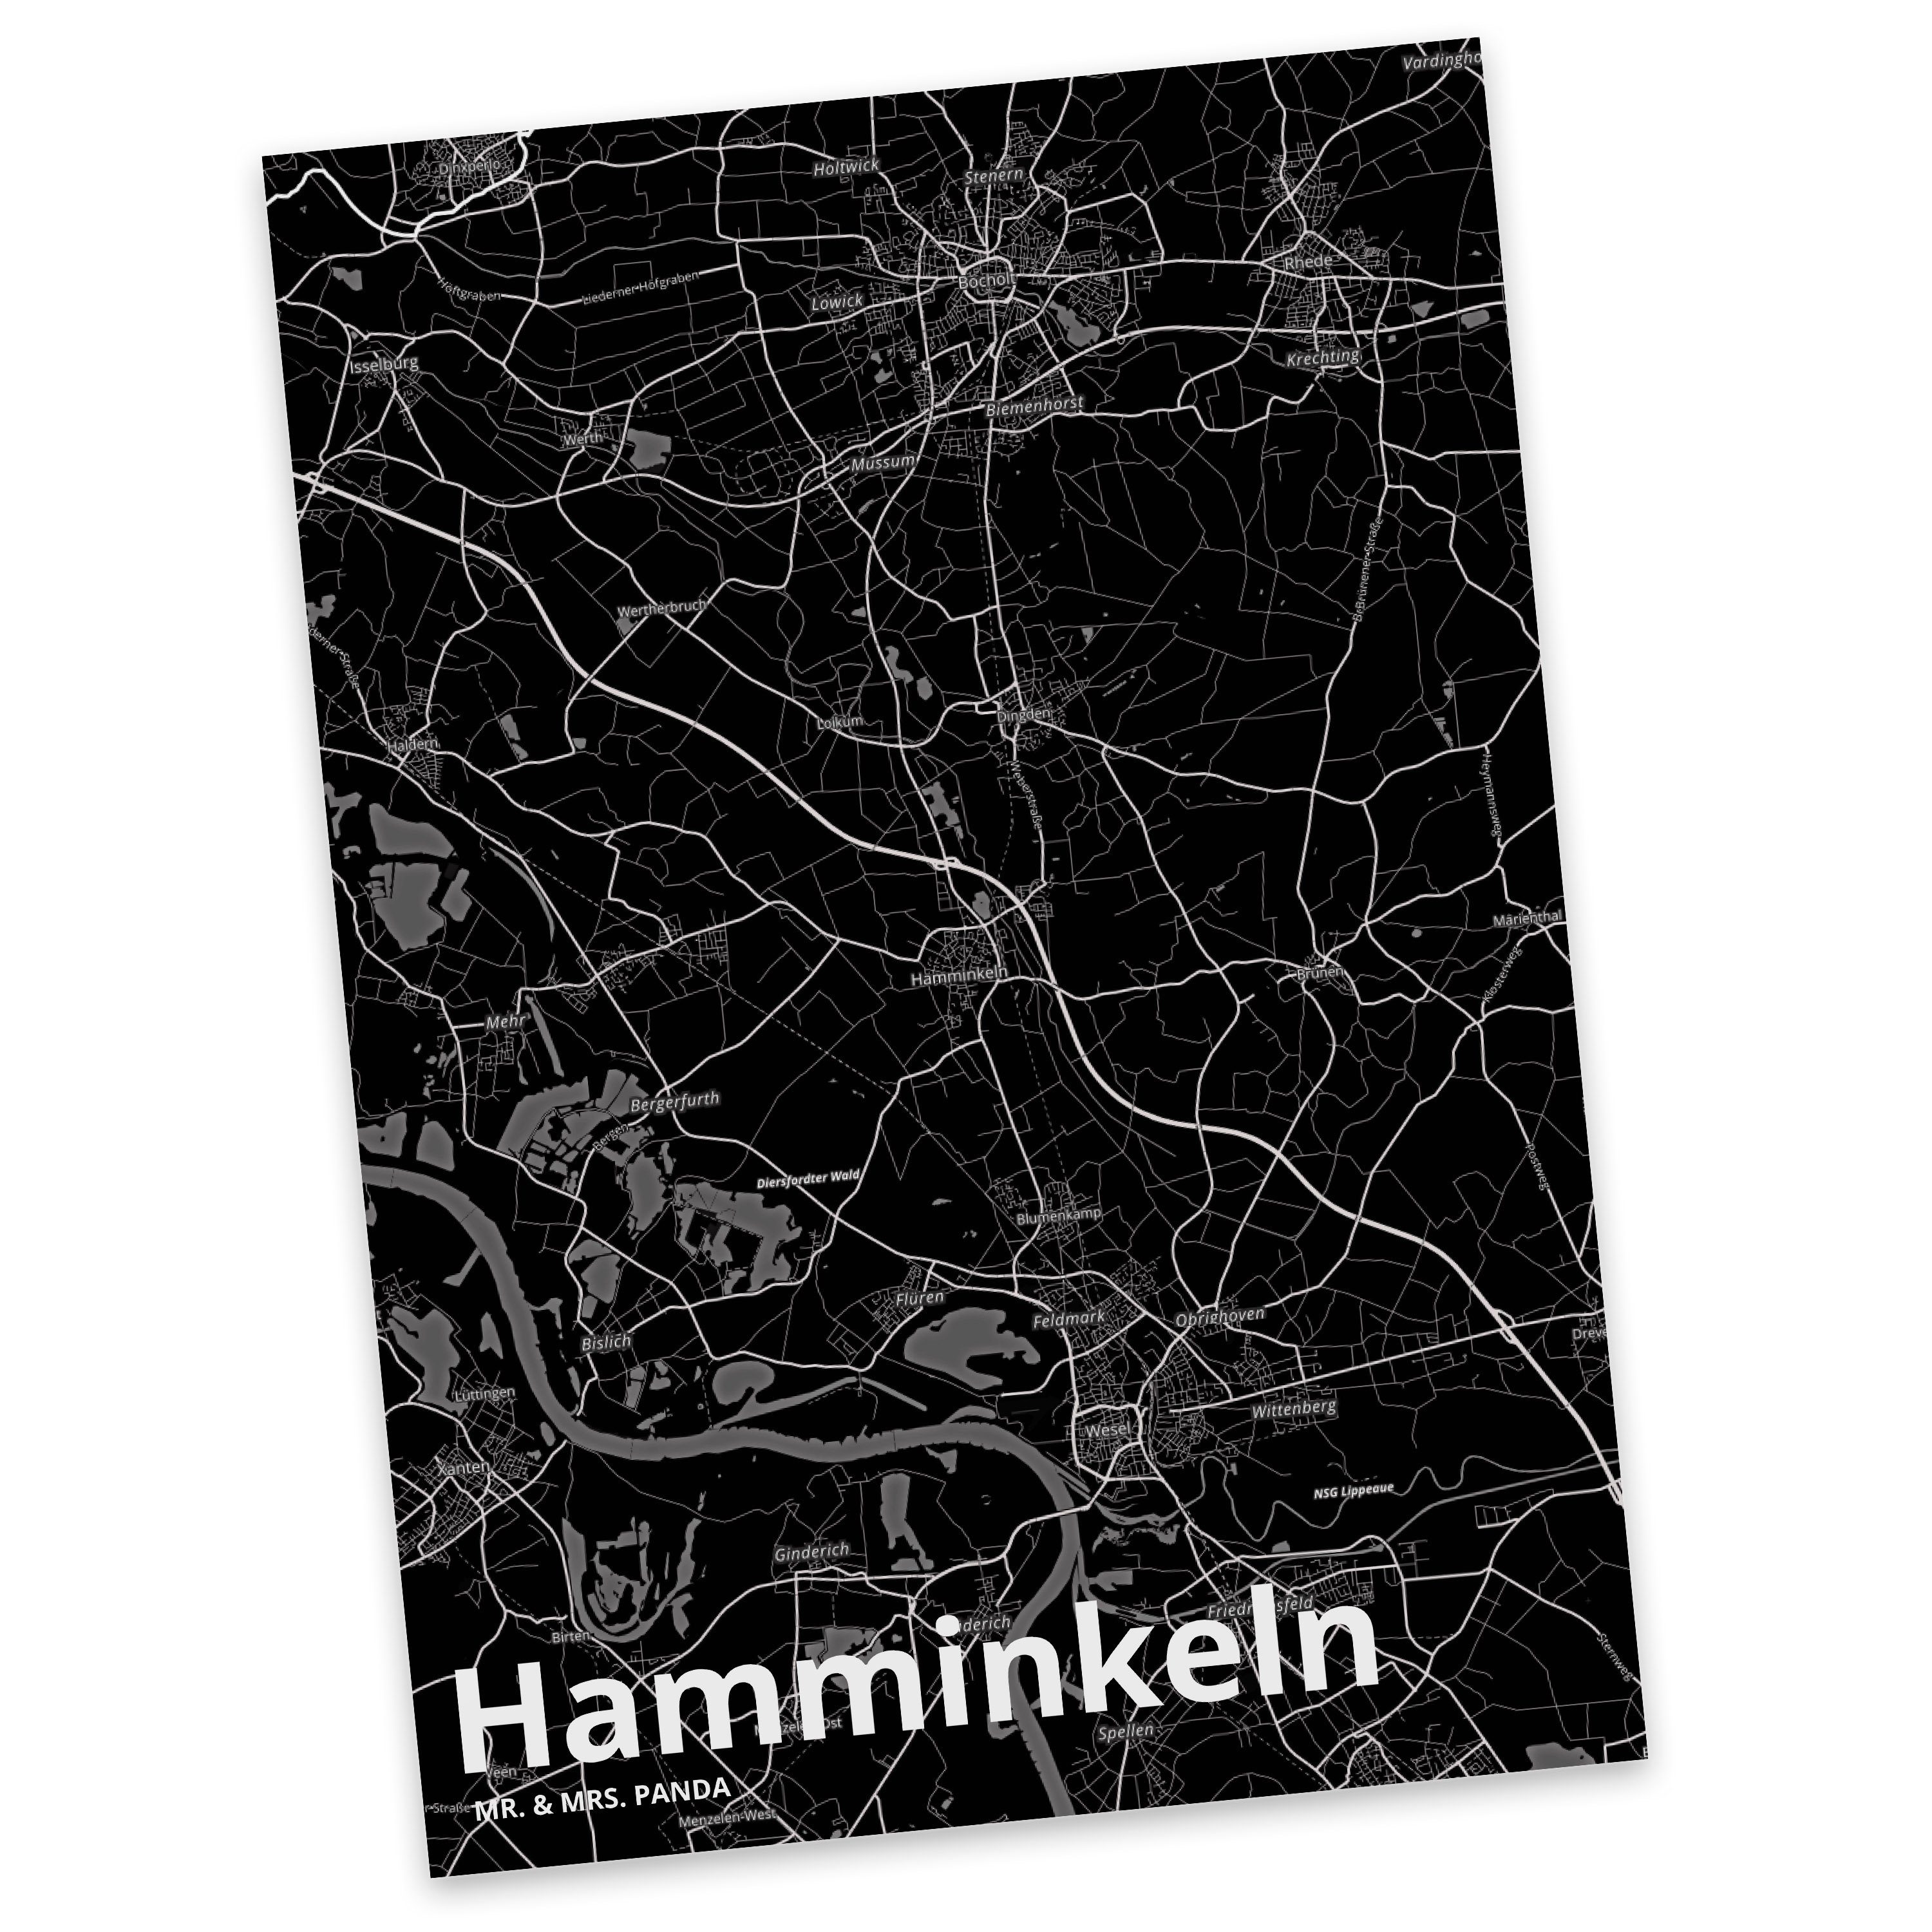 Mr. & Mrs. Geschenk, S Ort, Dorf, Städte, Einladung, Hamminkeln Postkarte Panda - Ansichtskarte